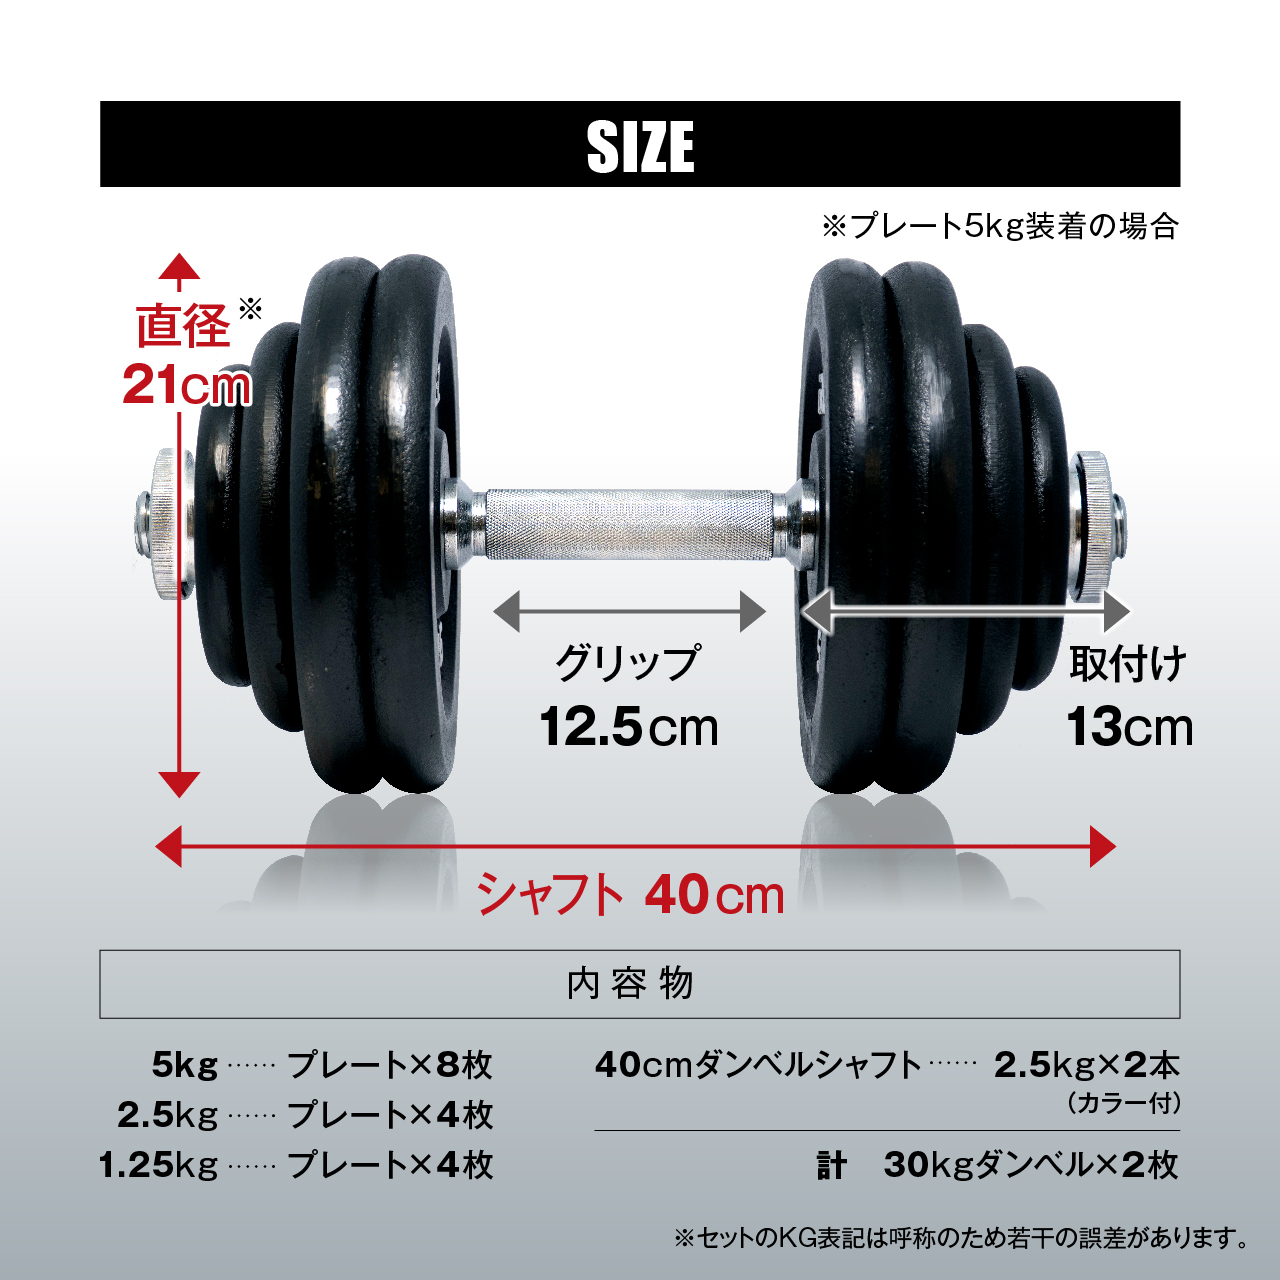 ダンベル セット IROTEC(アイロテック)アイアンダンベル60kgセット 30kg×2個 / ベンチプレス バーベル 可変式 筋トレ  ダンベルセット 鉄アレイ 筋トレ器具